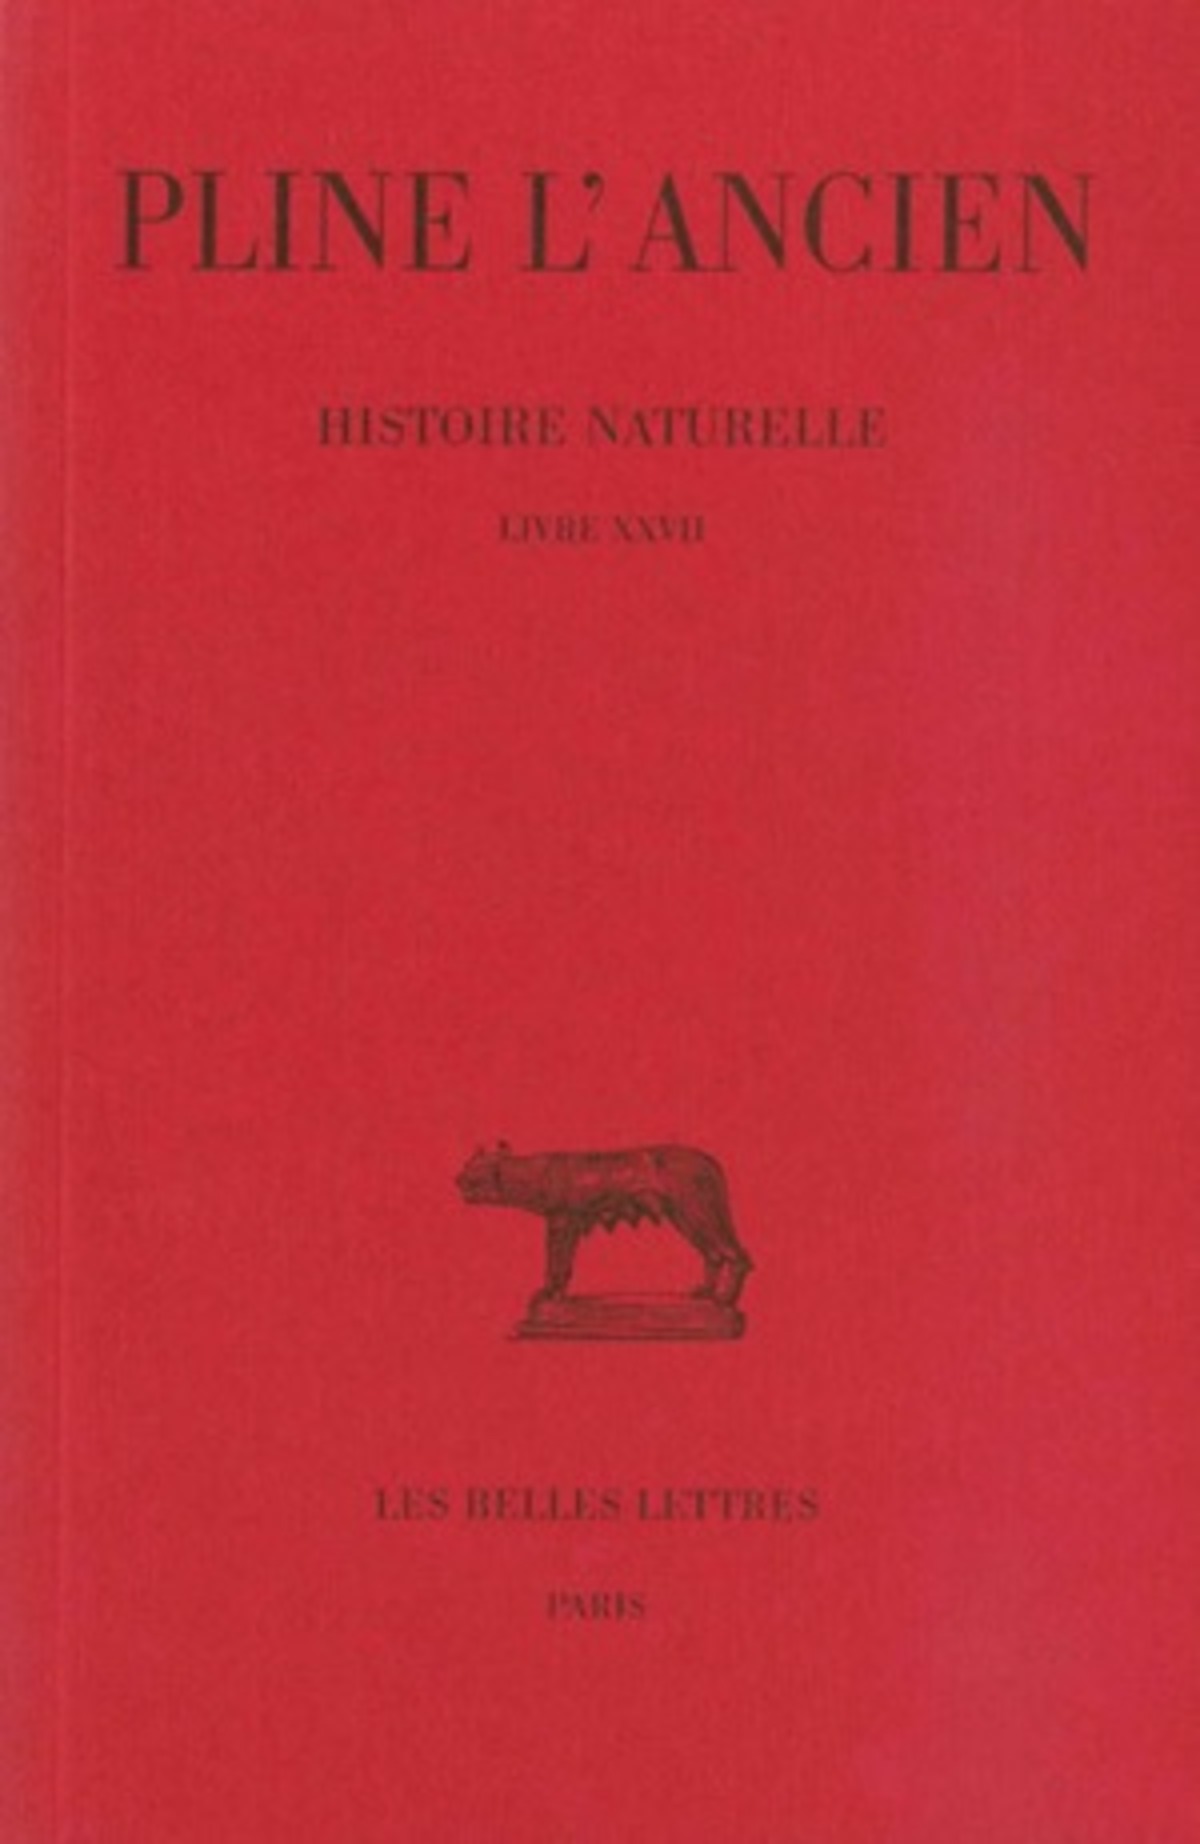 Histoire naturelle. Livre XXVII